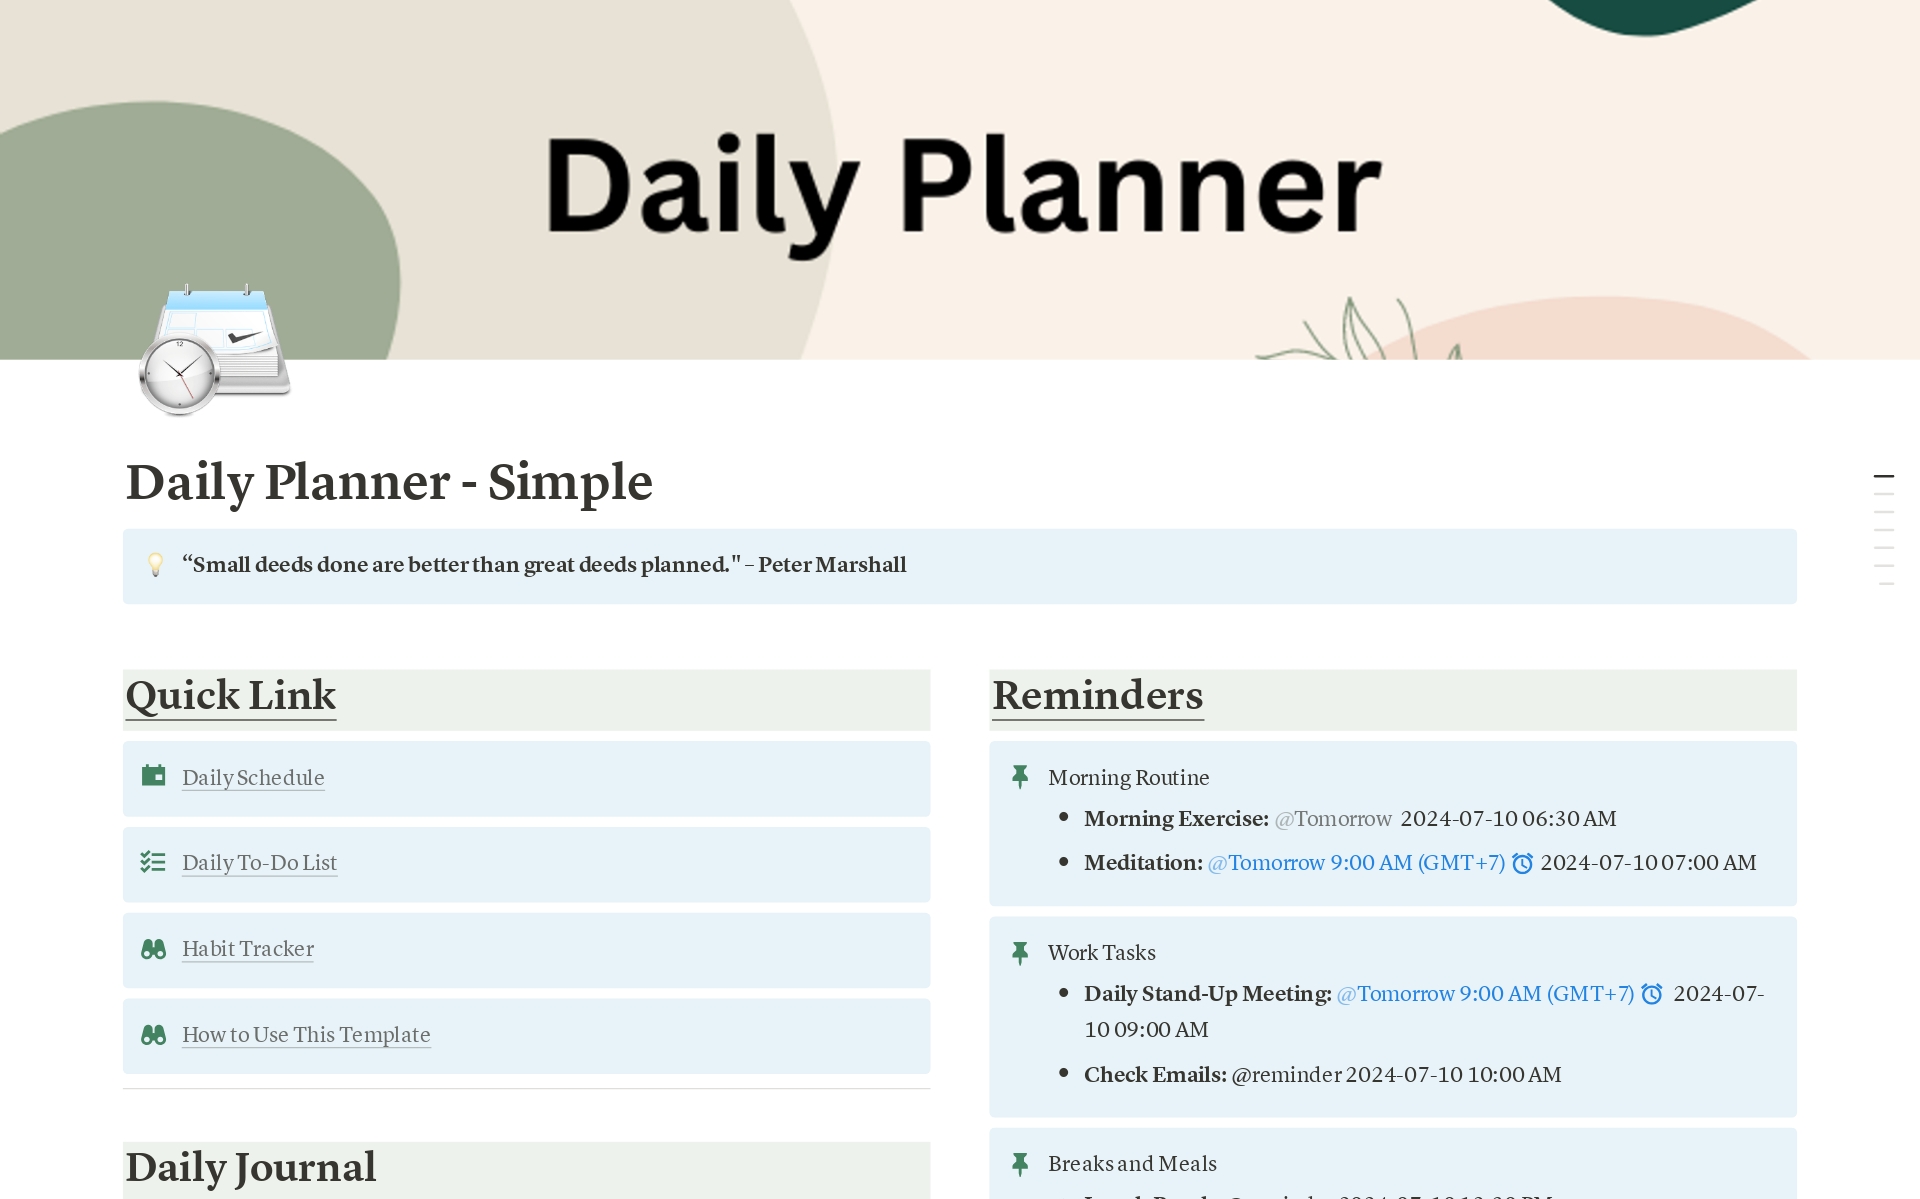 Daily Planner - Simpleのテンプレートのプレビュー